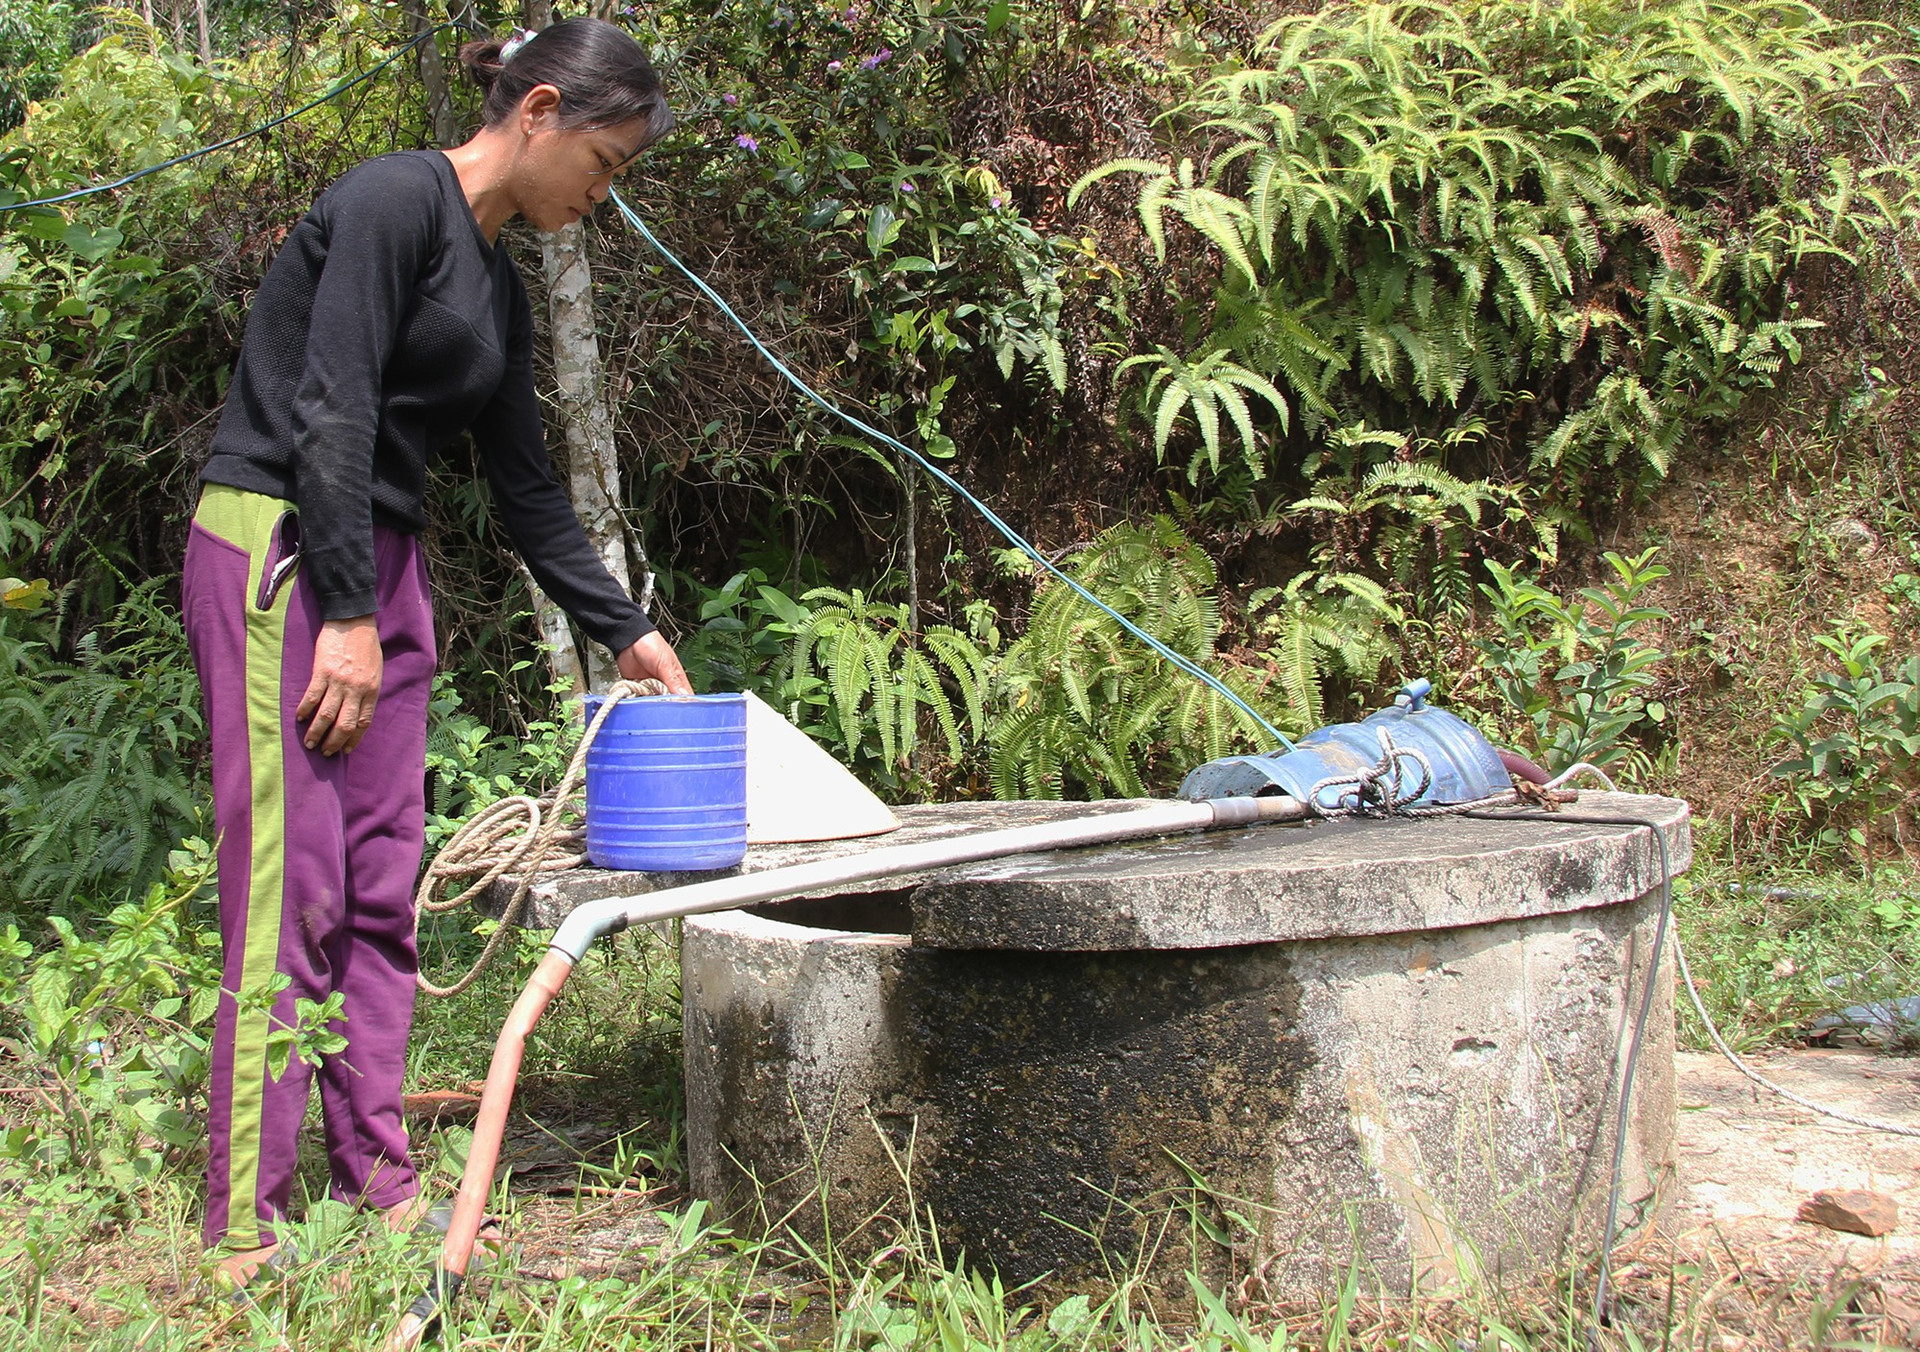 Mực nước giếng xuống thấp không thể chảy lên bồn chứa, người dân thôn Phú Trường, xã Tam Trà phải dùng gầu để múc. Ảnh: H.Q